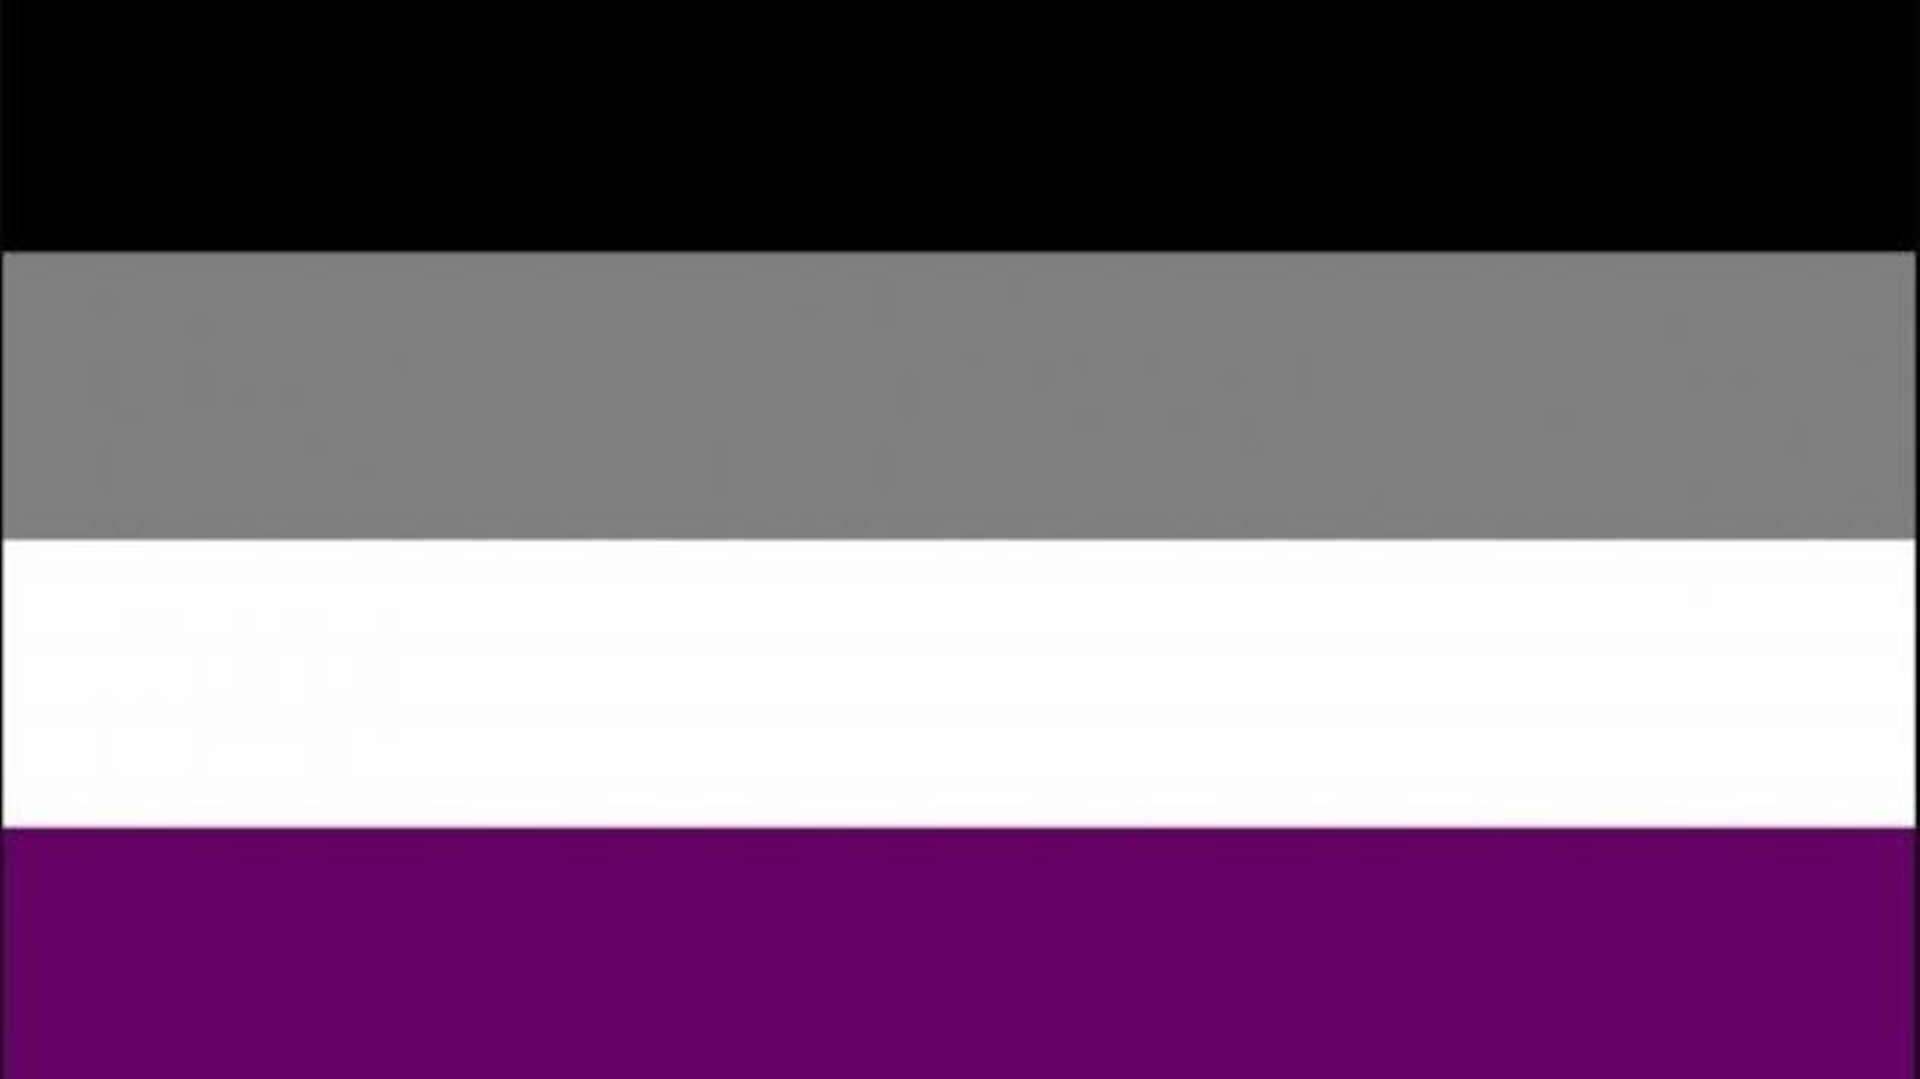 Le drapeau asexuel